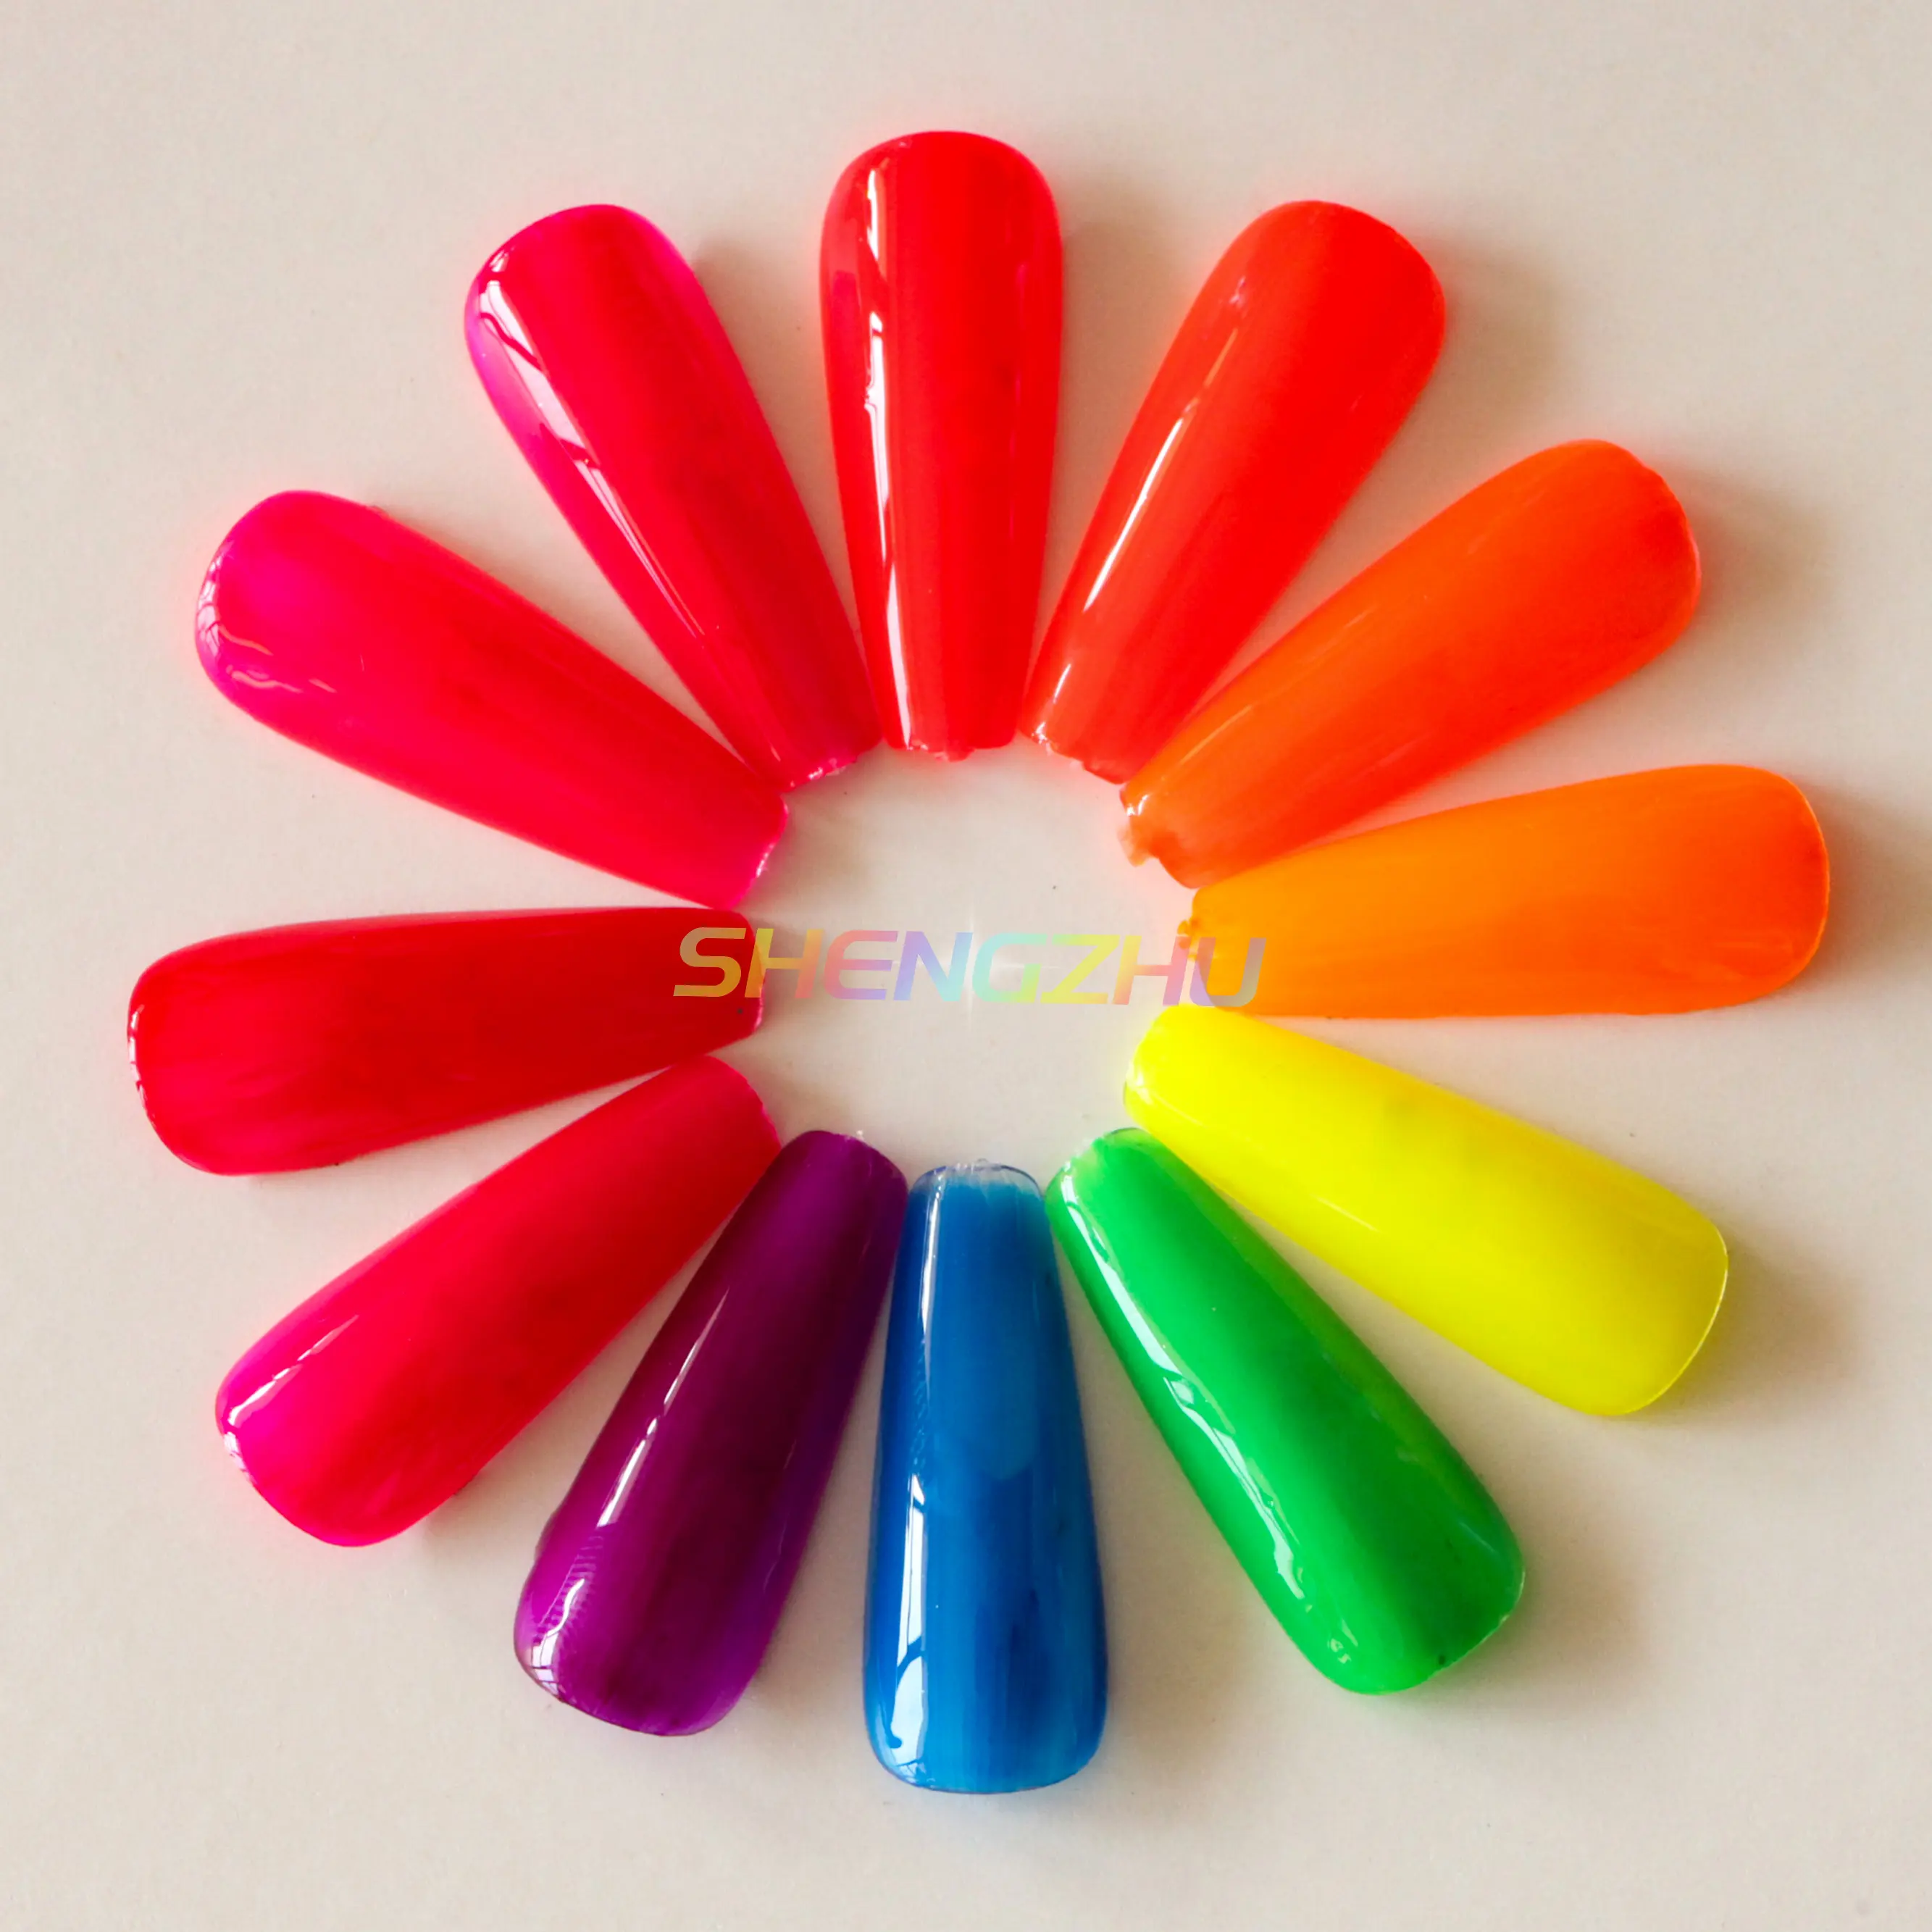 Tekstil için süper parlaklık Neon Pigment tozu/kumaş boyama balçık renklendirici epoksi reçine mat boya renkleri